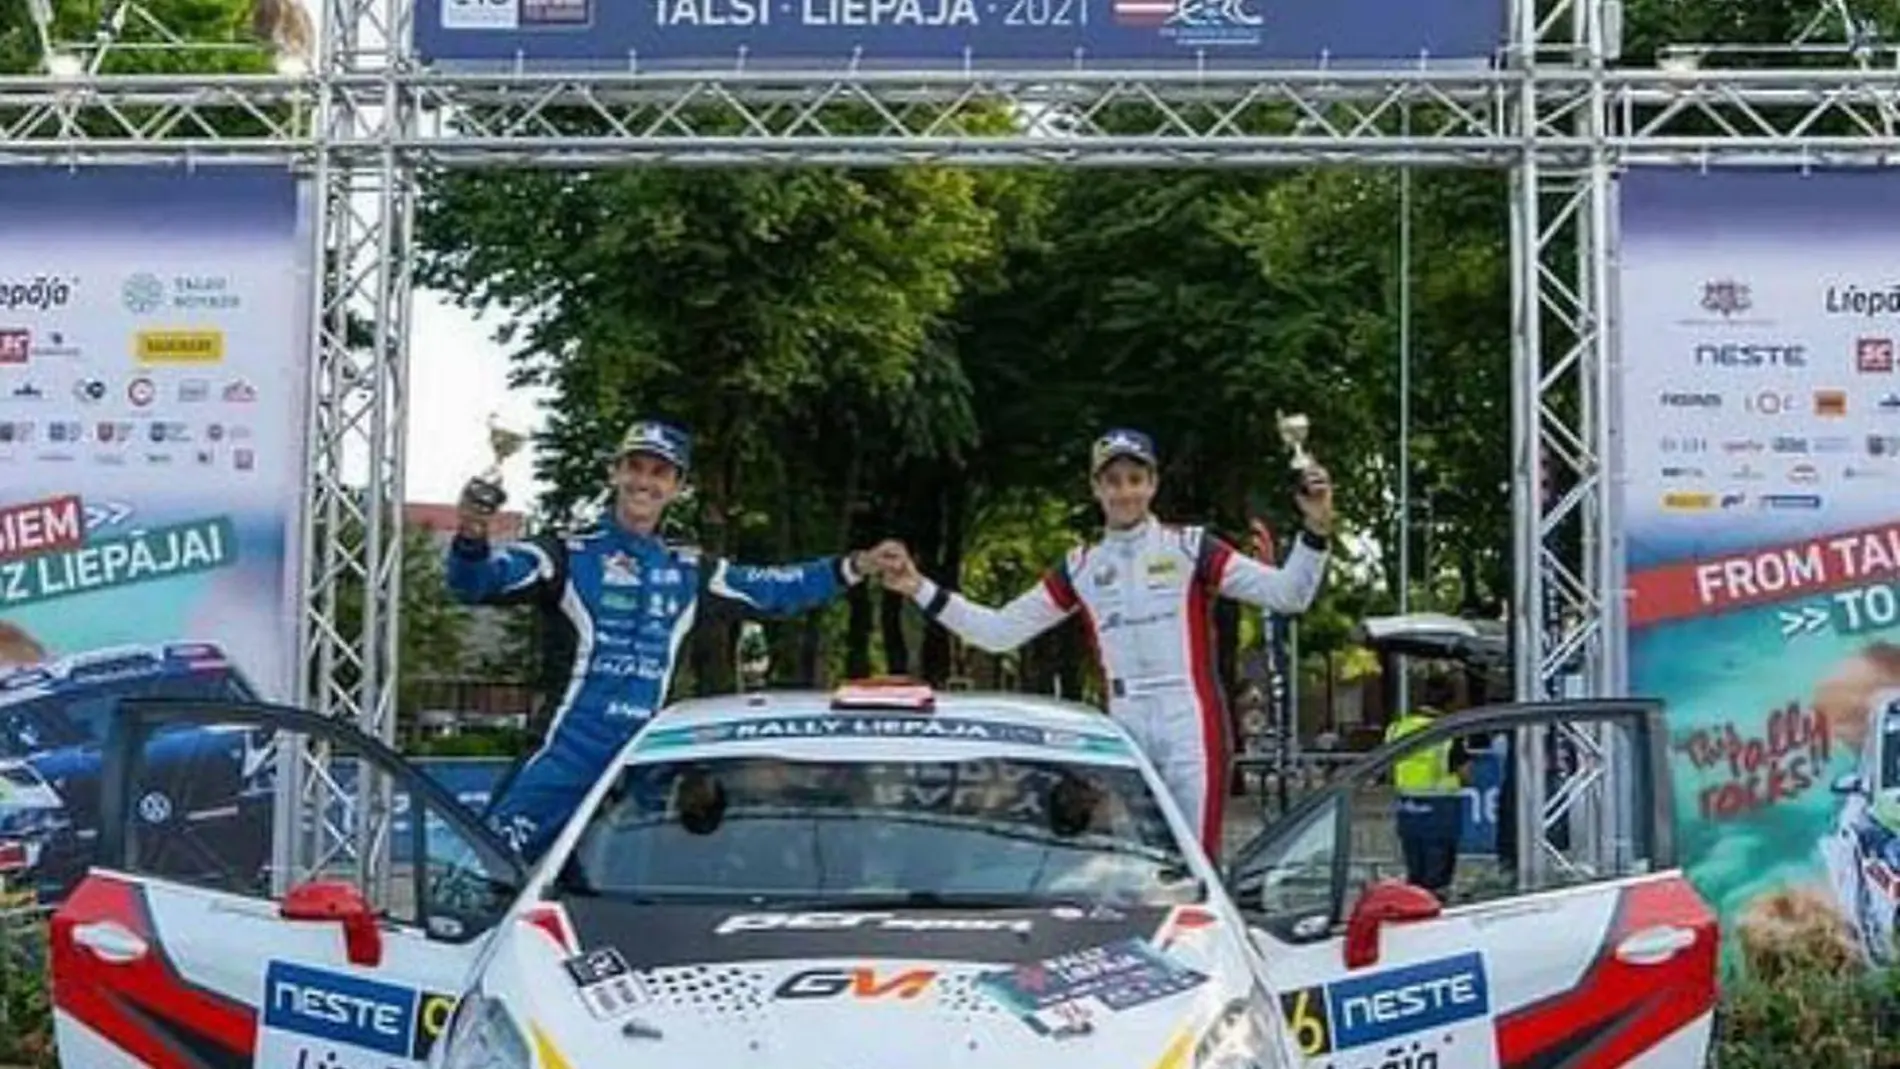  Gil Membrado junto a Rogelio Donate en el podio del Rally de Liepaja